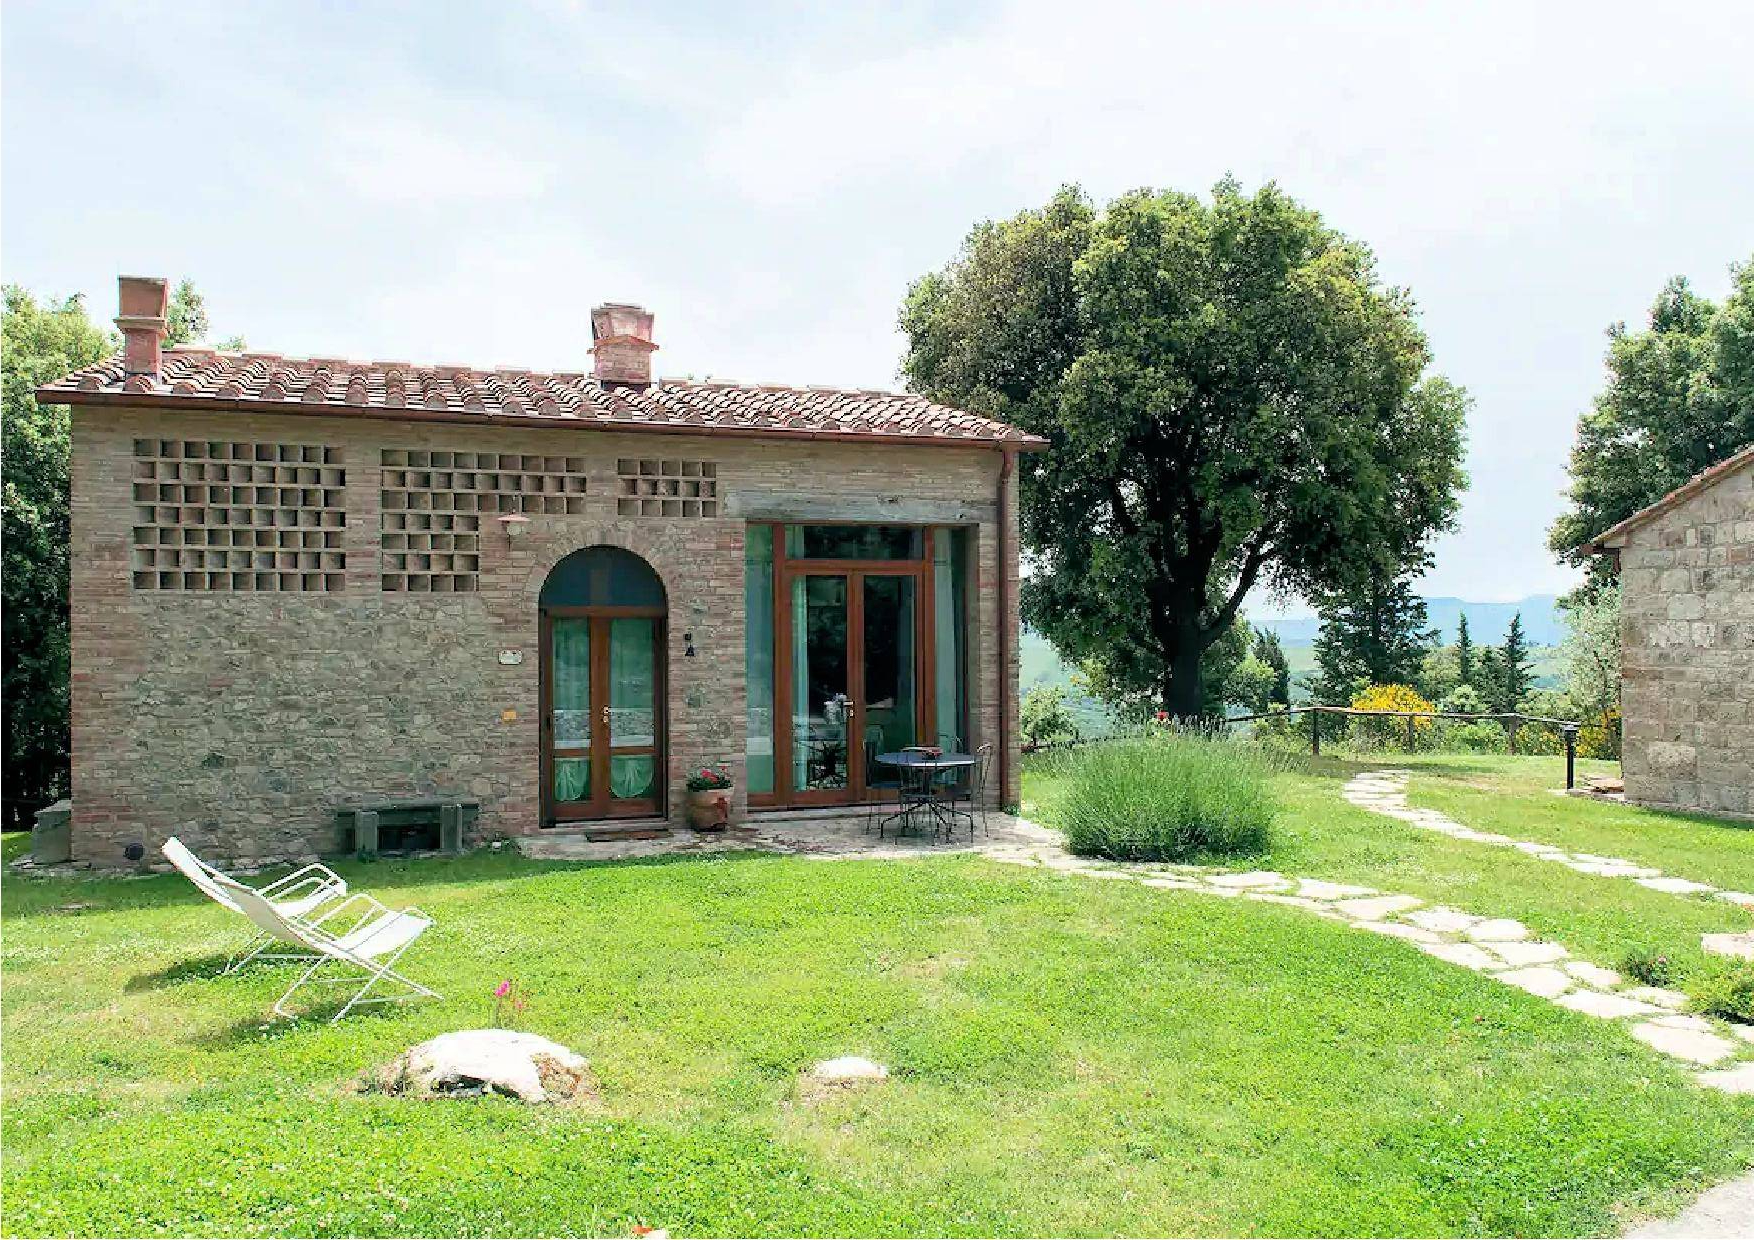 Rustico / Casale in vendita a Gambassi Terme, 4 locali, prezzo € 390.000 | PortaleAgenzieImmobiliari.it